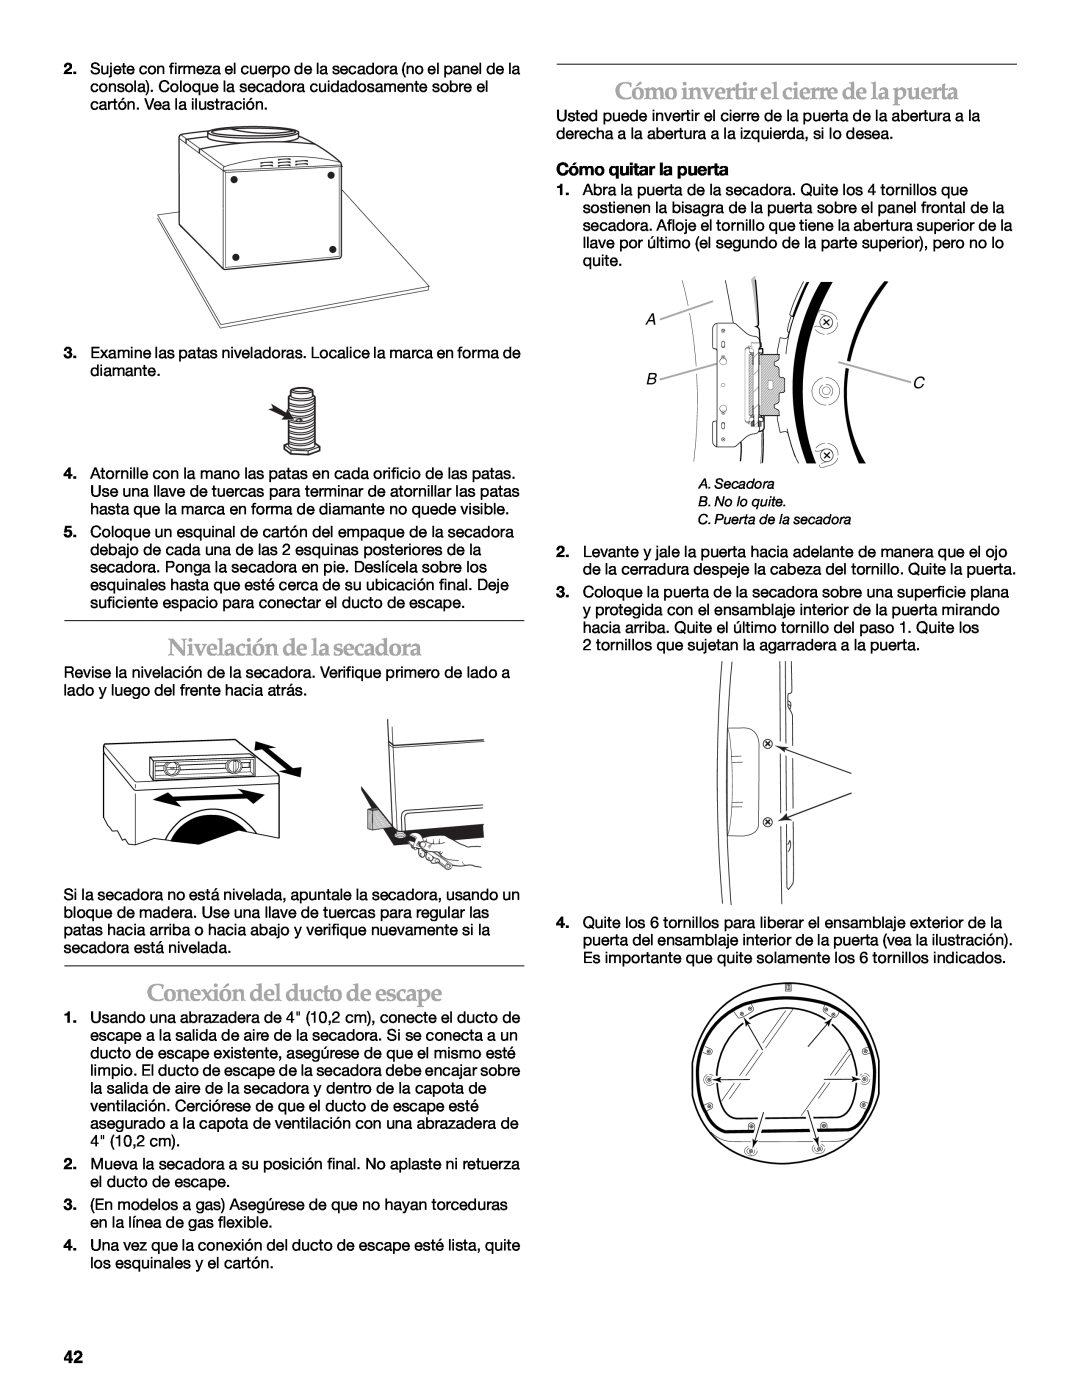 Maytag W10099070 manual Cómo invertir elcierre de la puerta, Nivelación de la secadora, Conexión del ducto de escape 